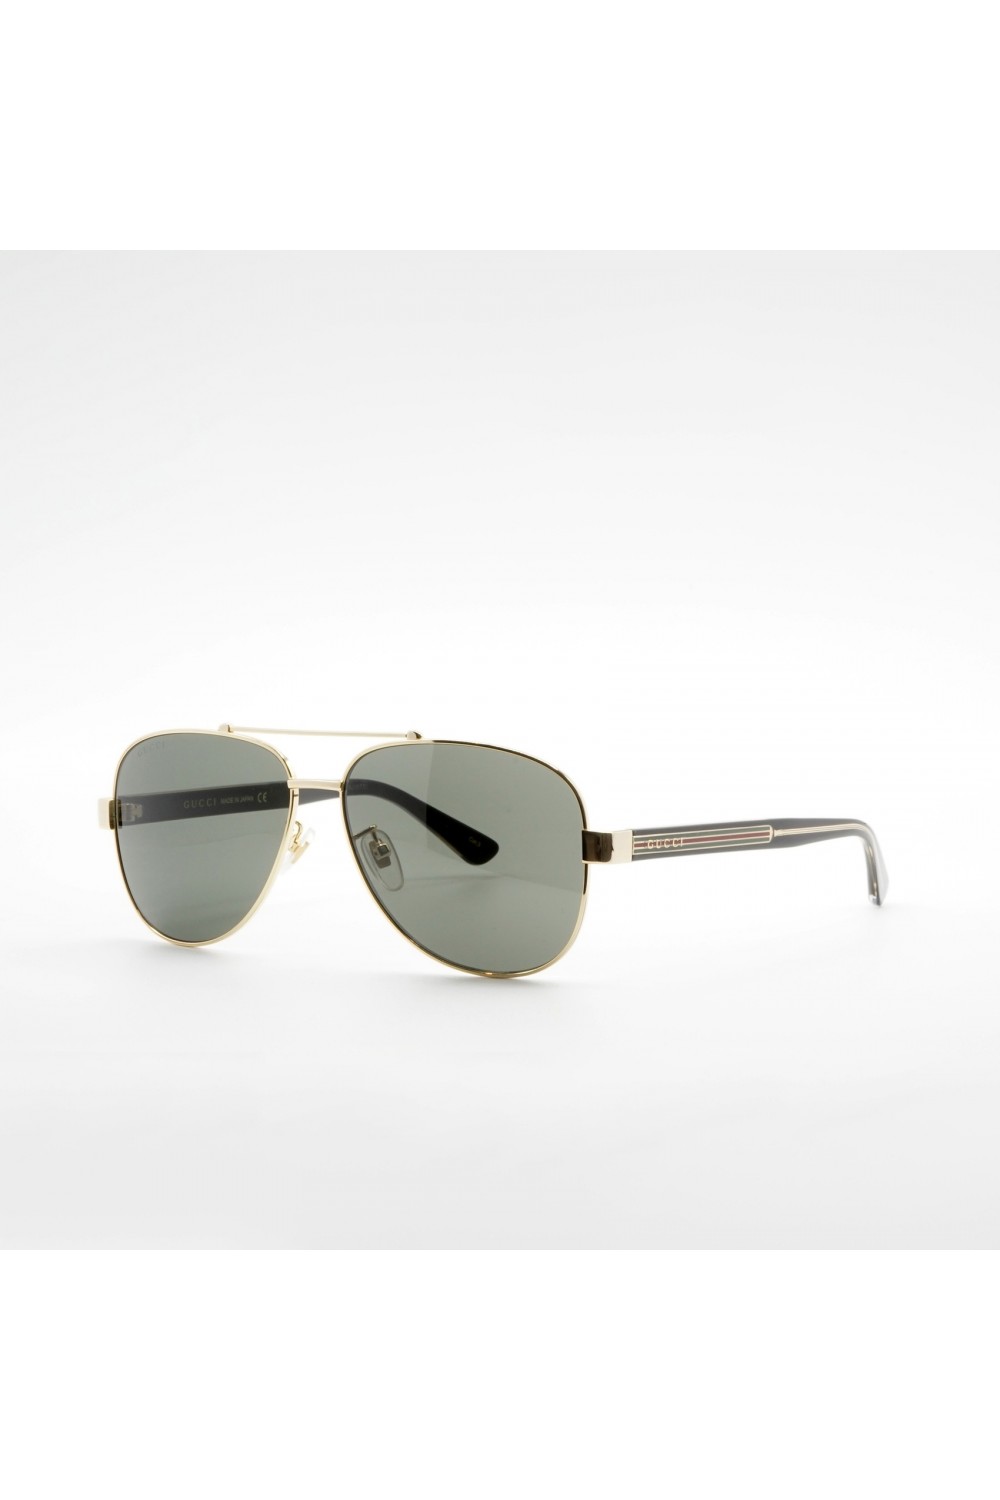 Gucci - Occhiali da sole in metallo aviator per uomo oro - GG0528S 001